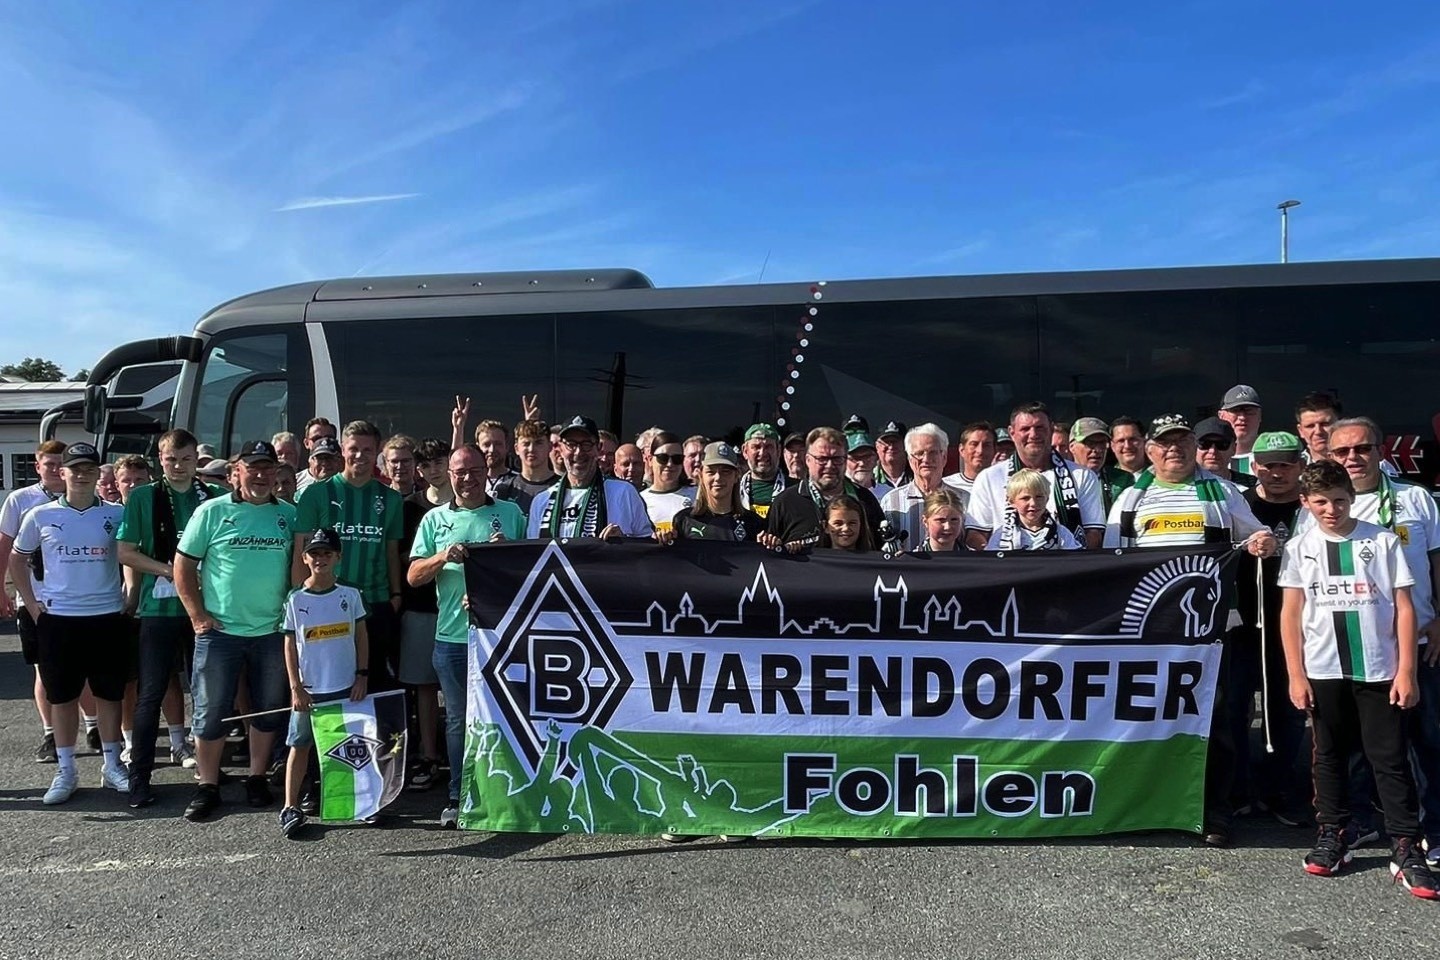 Fohlen on Tour,Warendorfer Fohlen,Eddy Erpenbeck,Bustour,Warendorf,Borussia Mönchengladbach,